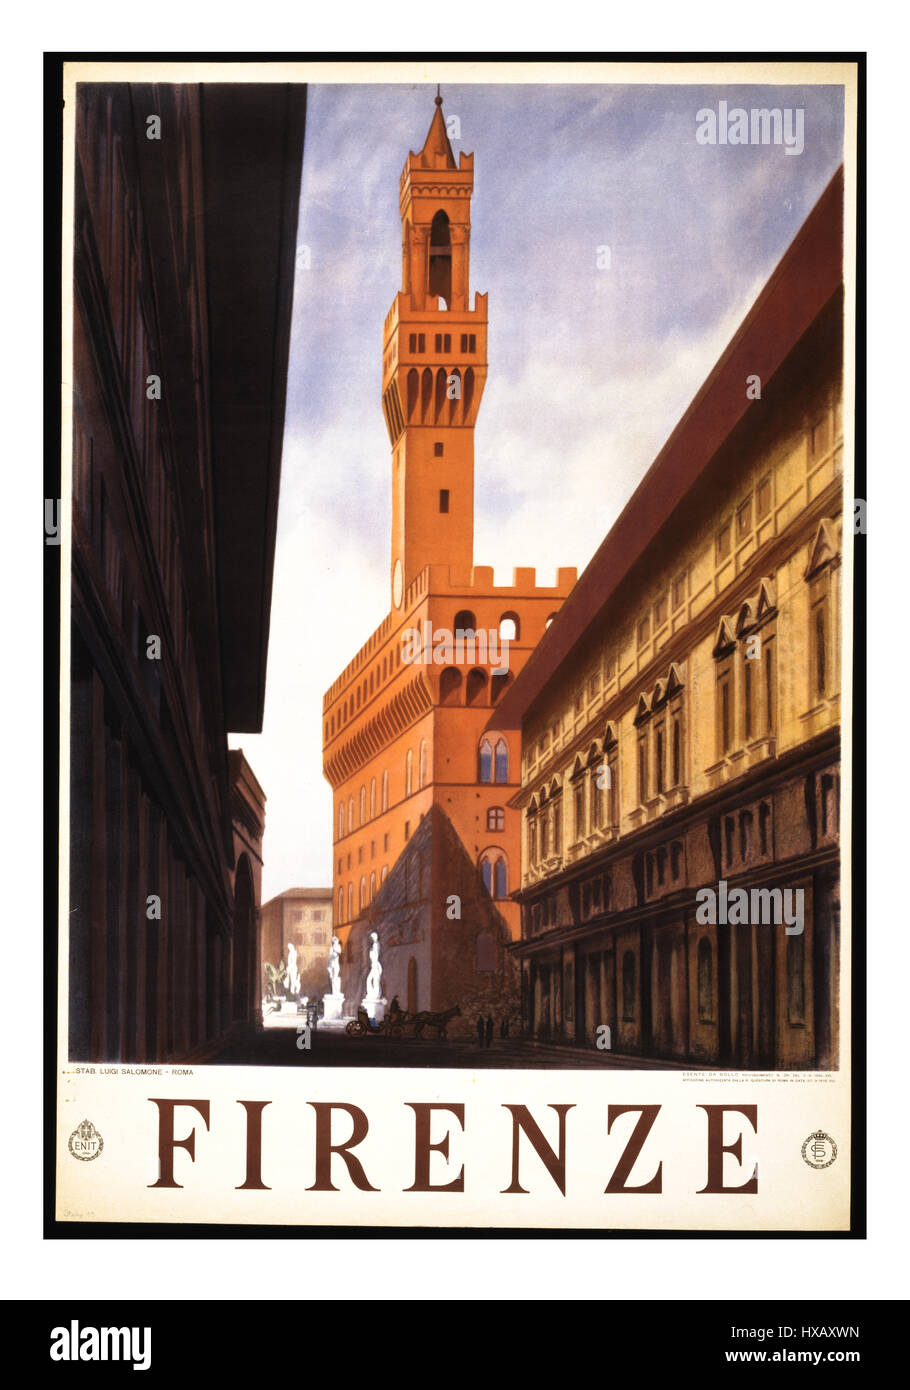 Retro Vintage travel poster pour Firenze Florence avec le Palazzo Vecchio, l'hôtel de ville de Florence Toscane Italie Banque D'Images